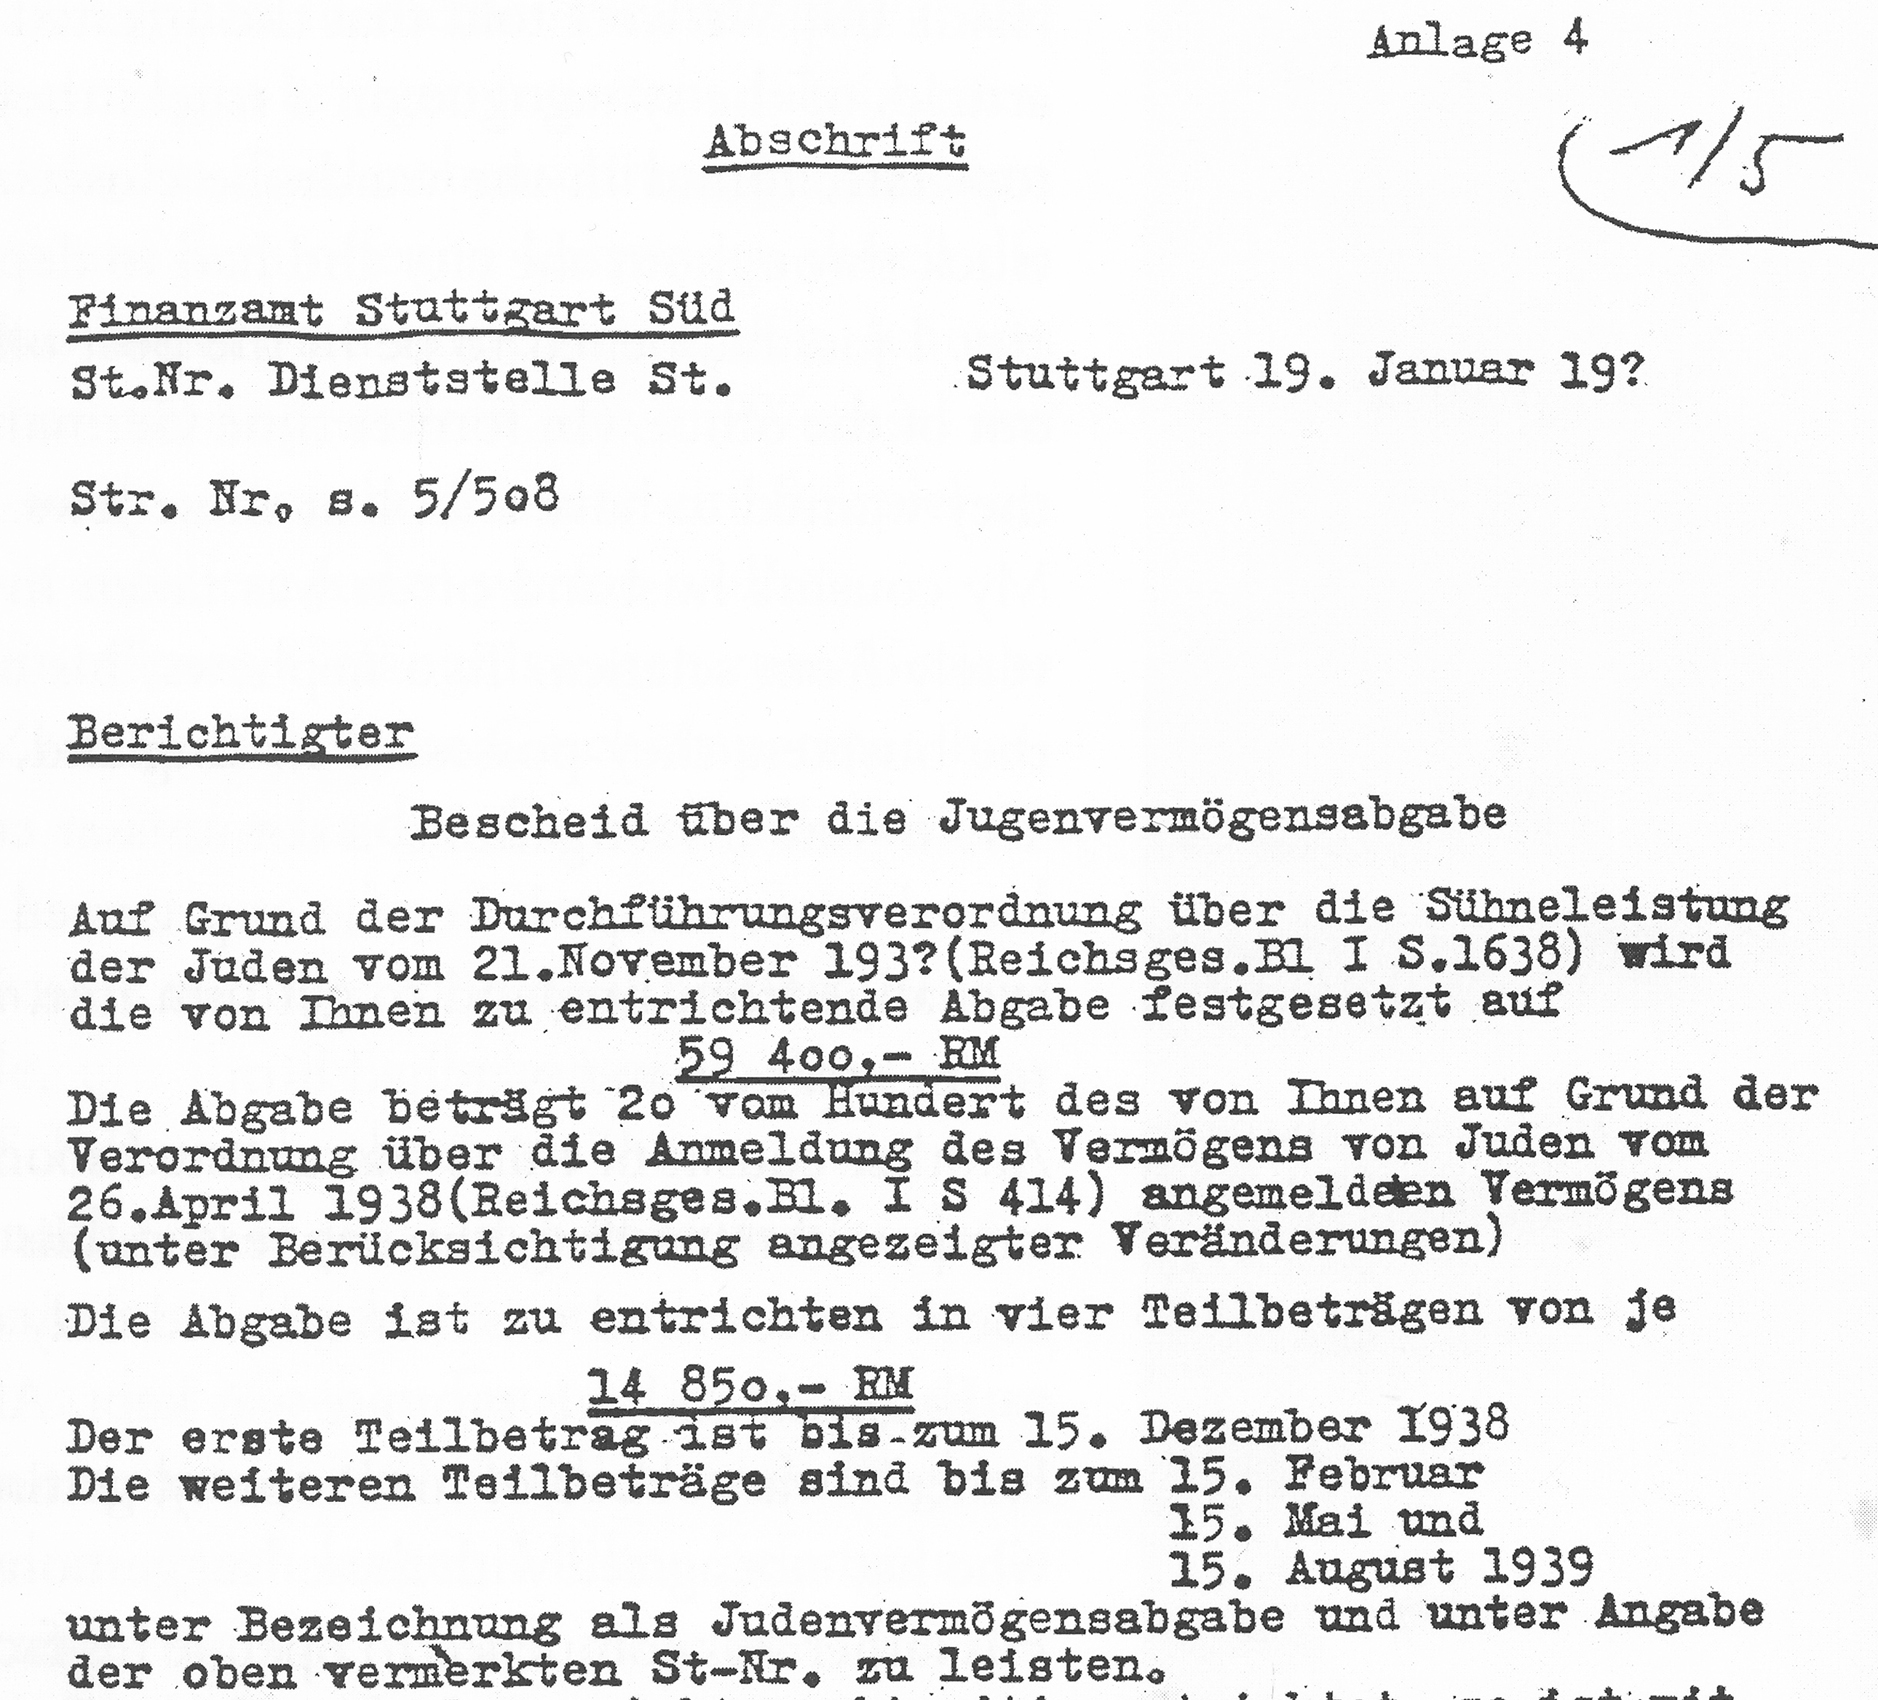 A copy of the notice Adolf Bernheim received regarding the 